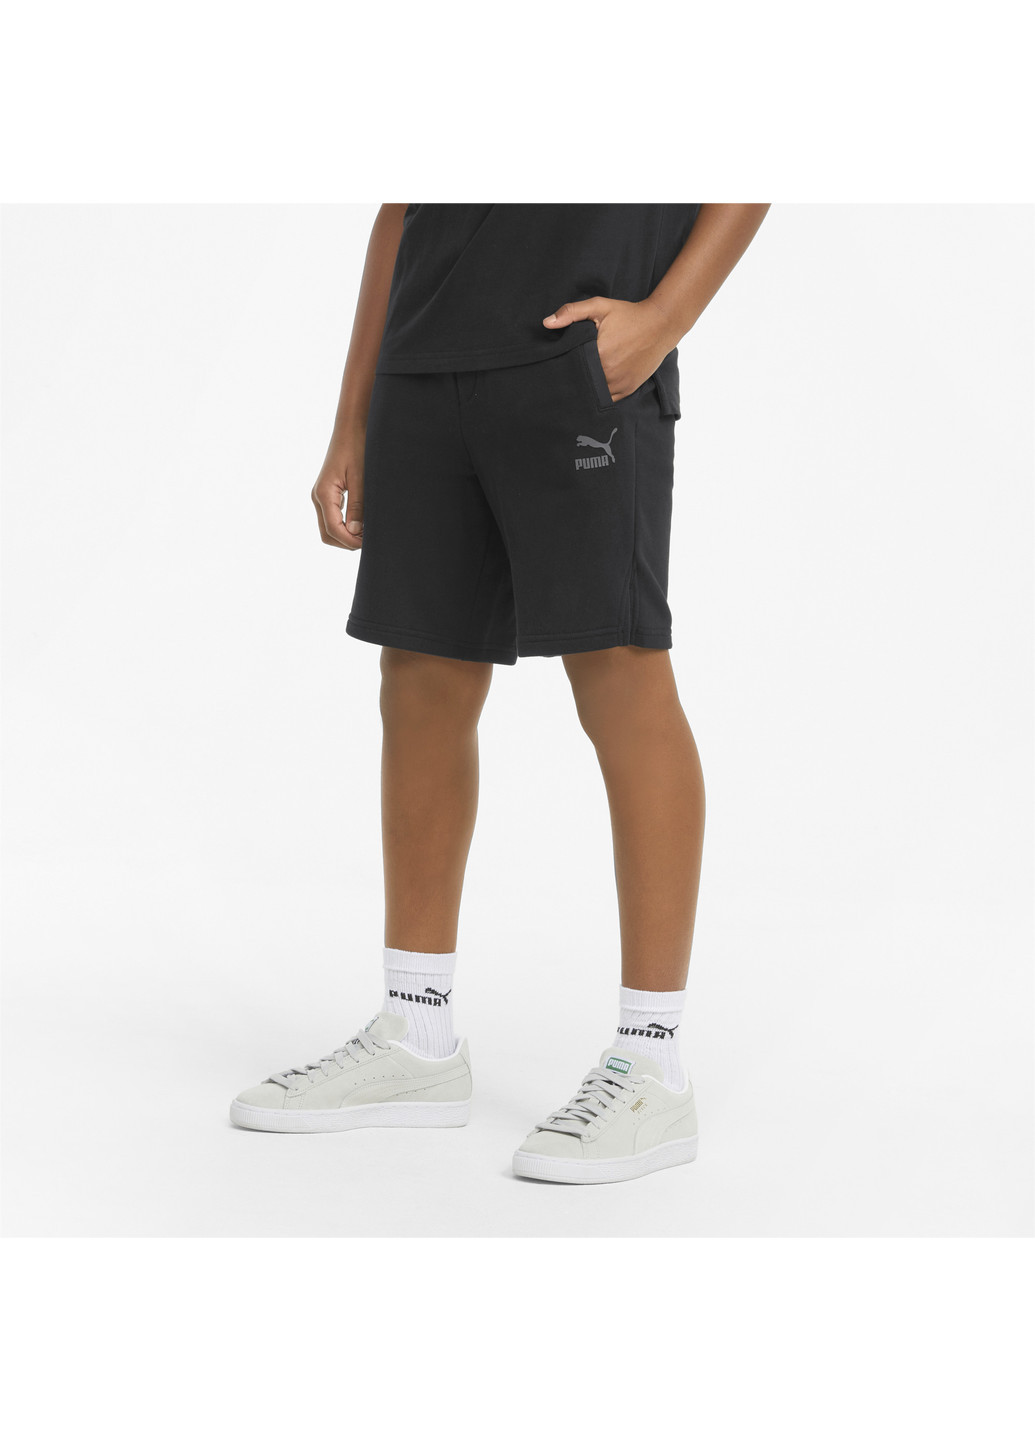 Детские шорты MATCHERS Youth Shorts Puma однотонные чёрные спортивные хлопок, нейлон, полиэстер